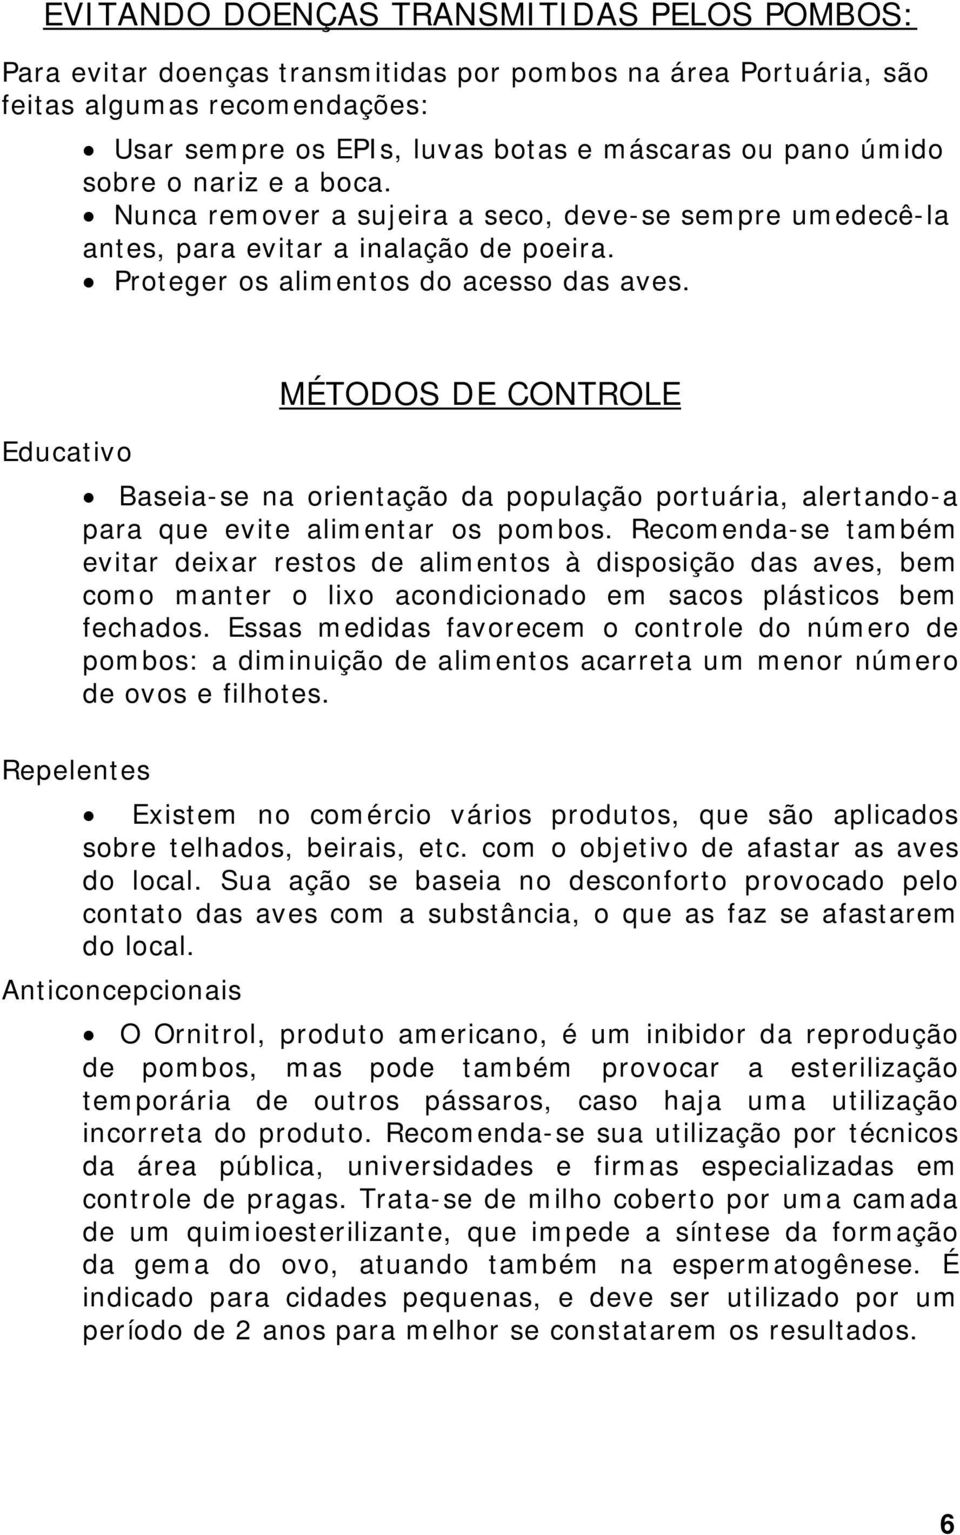 Educativo MÉTODOS DE CONTROLE Baseia-se na orientação da população portuária, alertando-a para que evite alimentar os pombos.